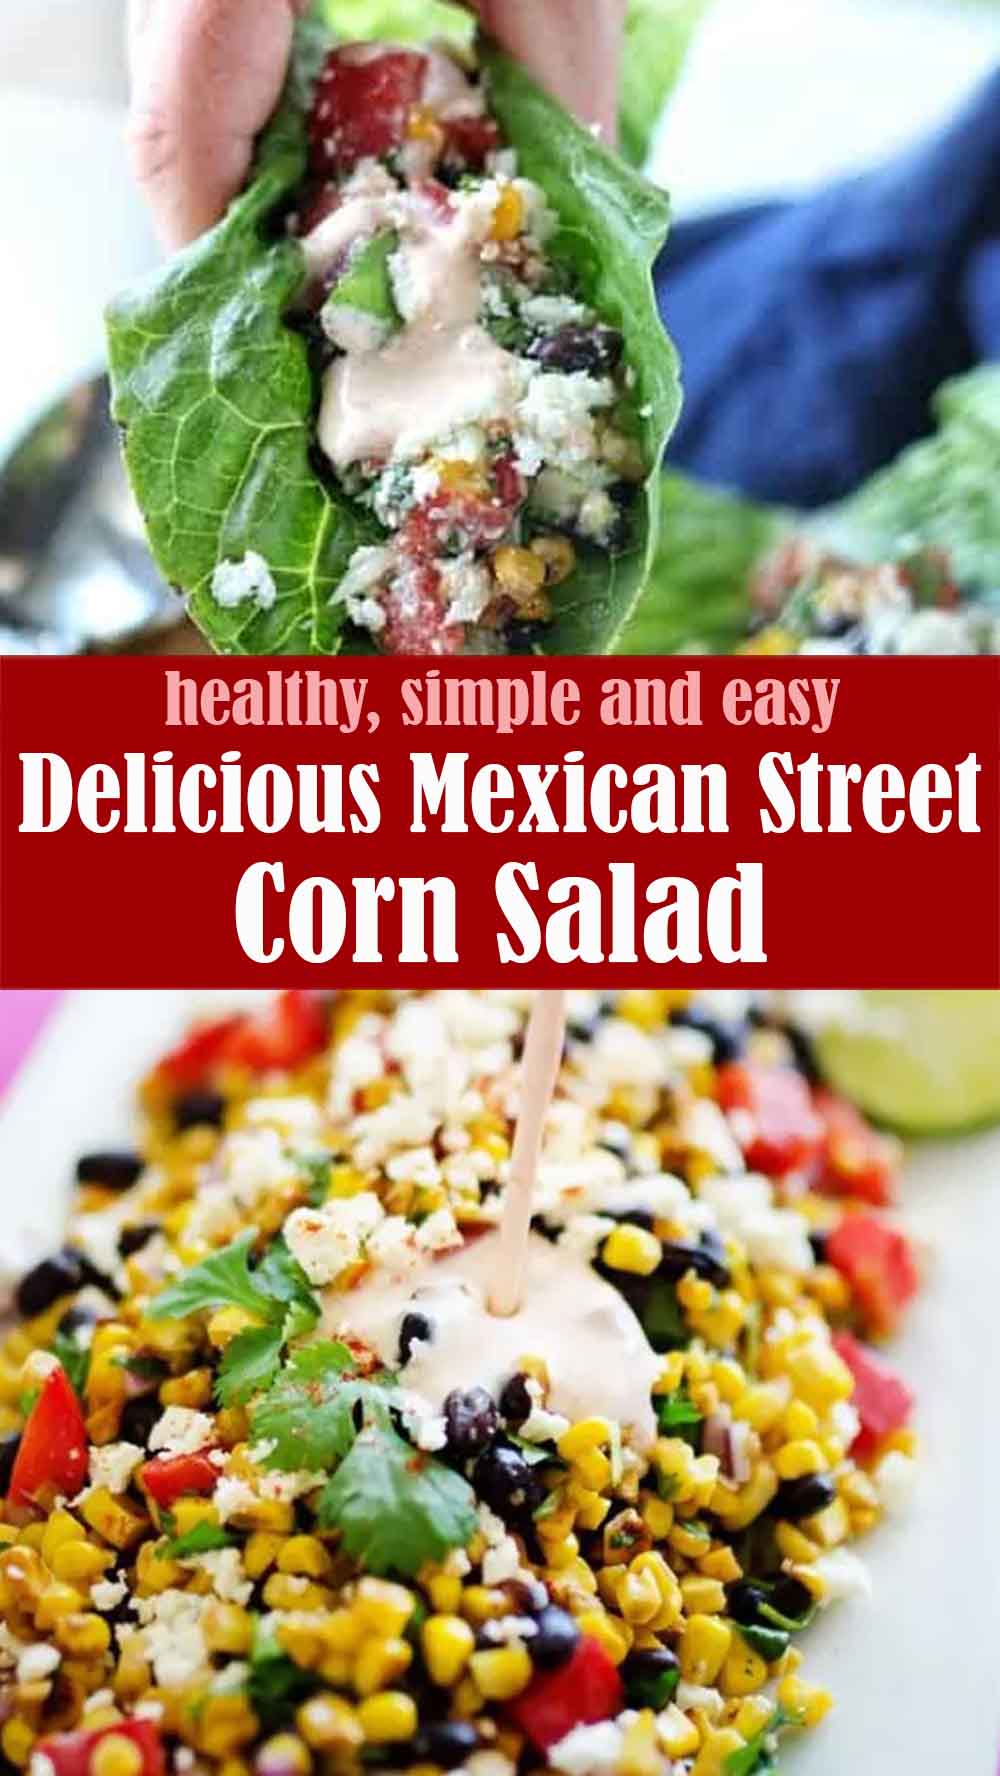 Delicious Mexican Street Corn Salad